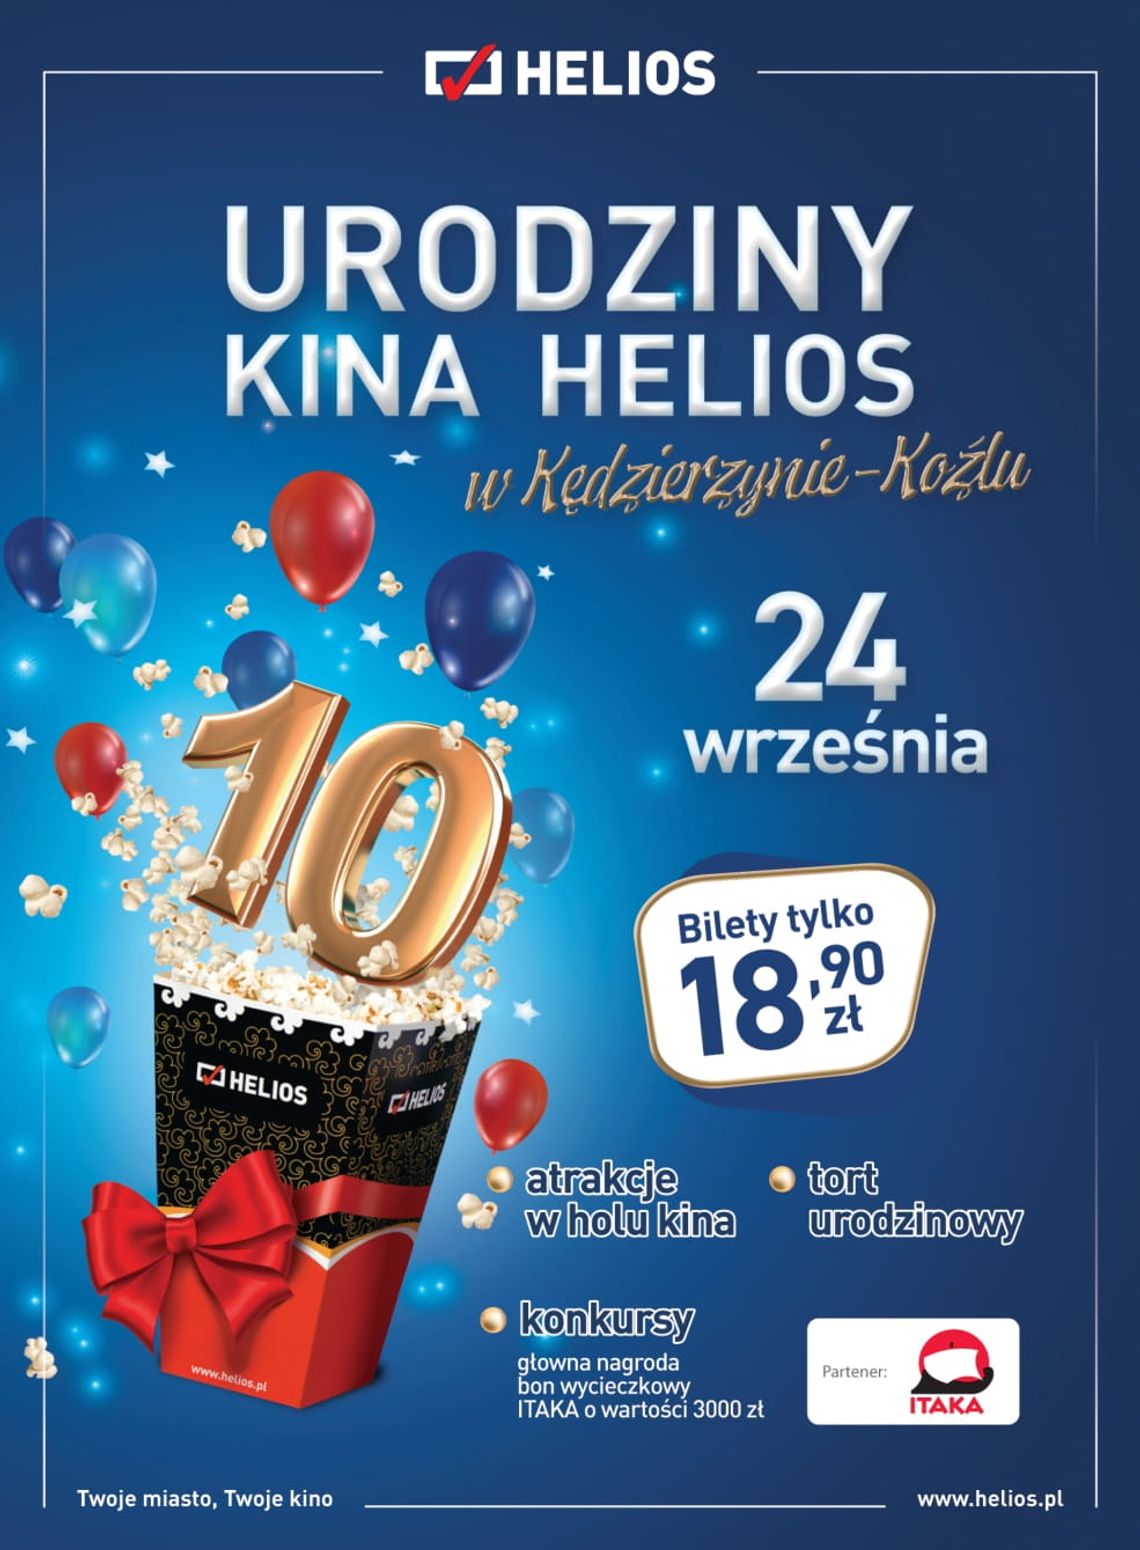 Dziesiąte urodziny kina Helios w Kędzierzynie-Koźlu!